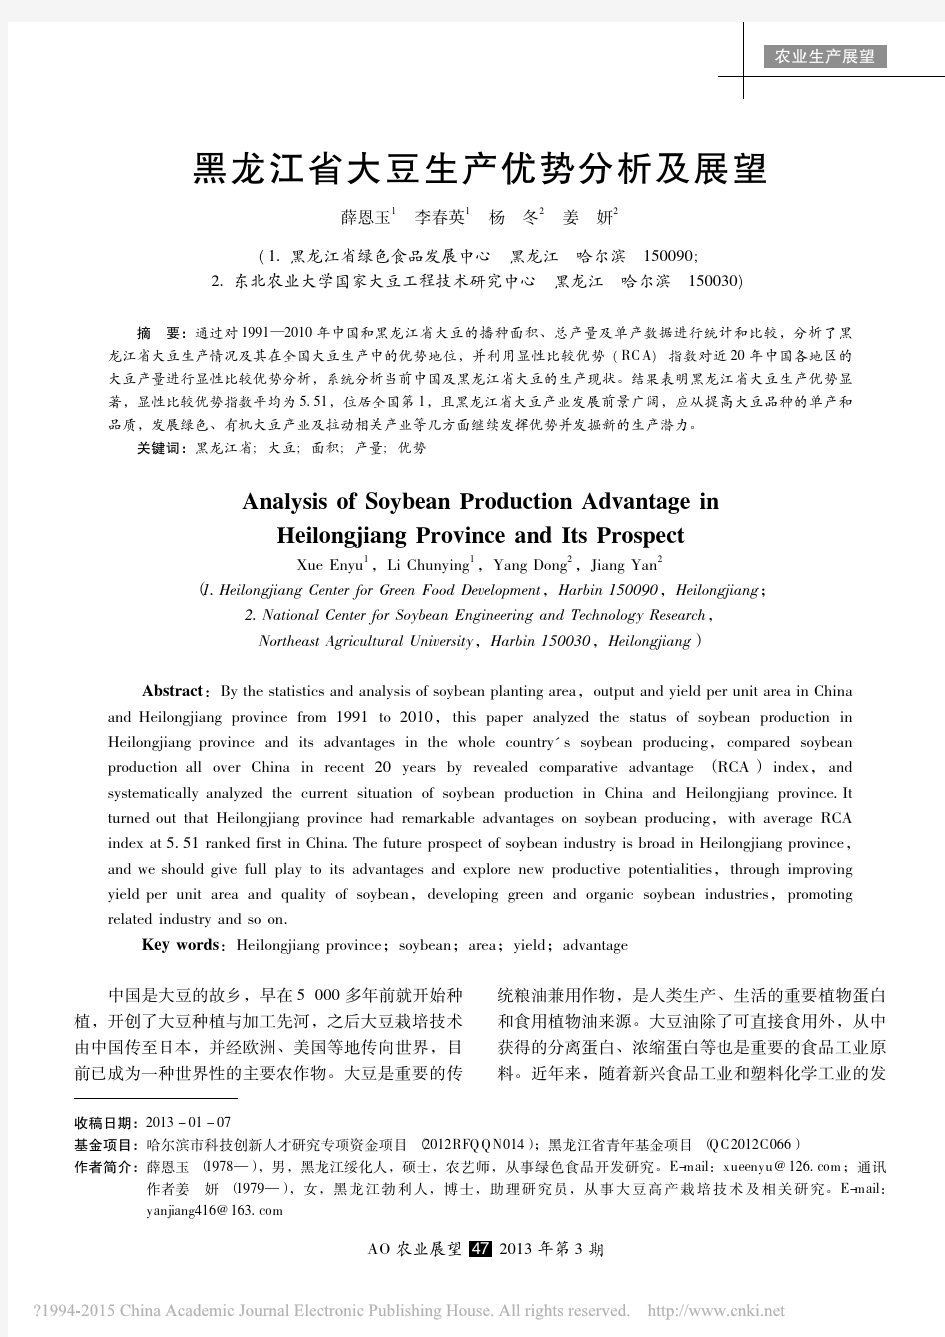 黑龙江省大豆生产优势分析及展望